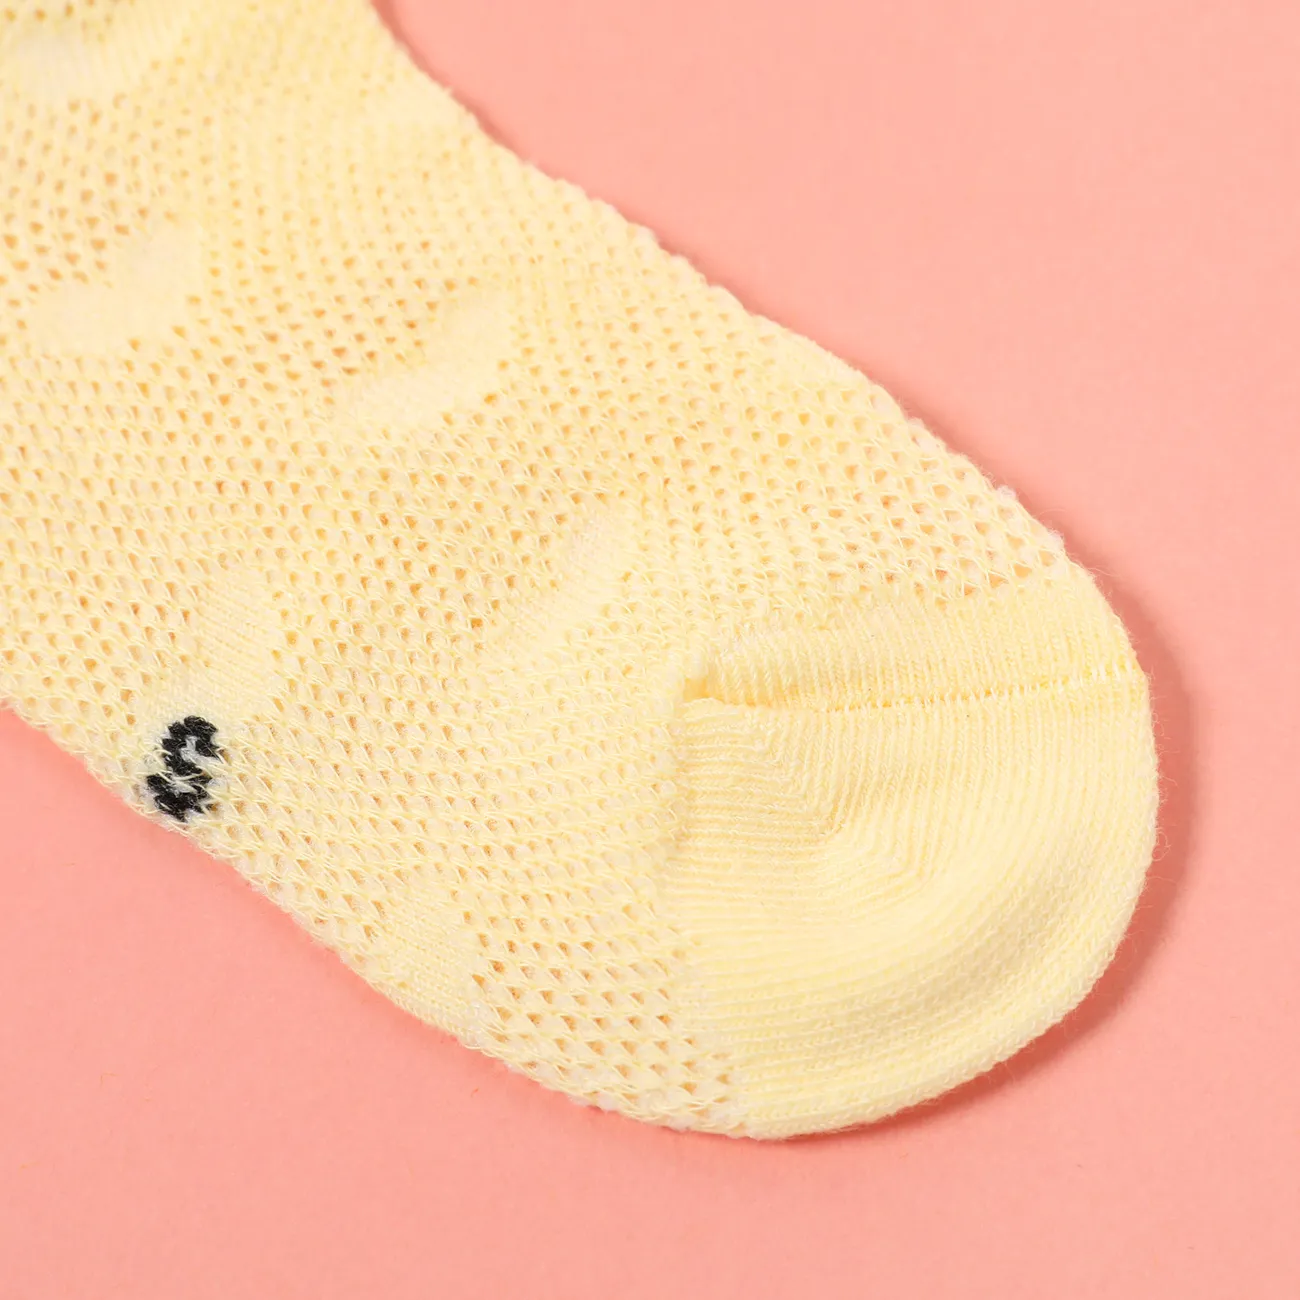 5-pairs Baby / Toddler / Kid Heart Stars Pattern Mesh Panel Socks Pink big image 1